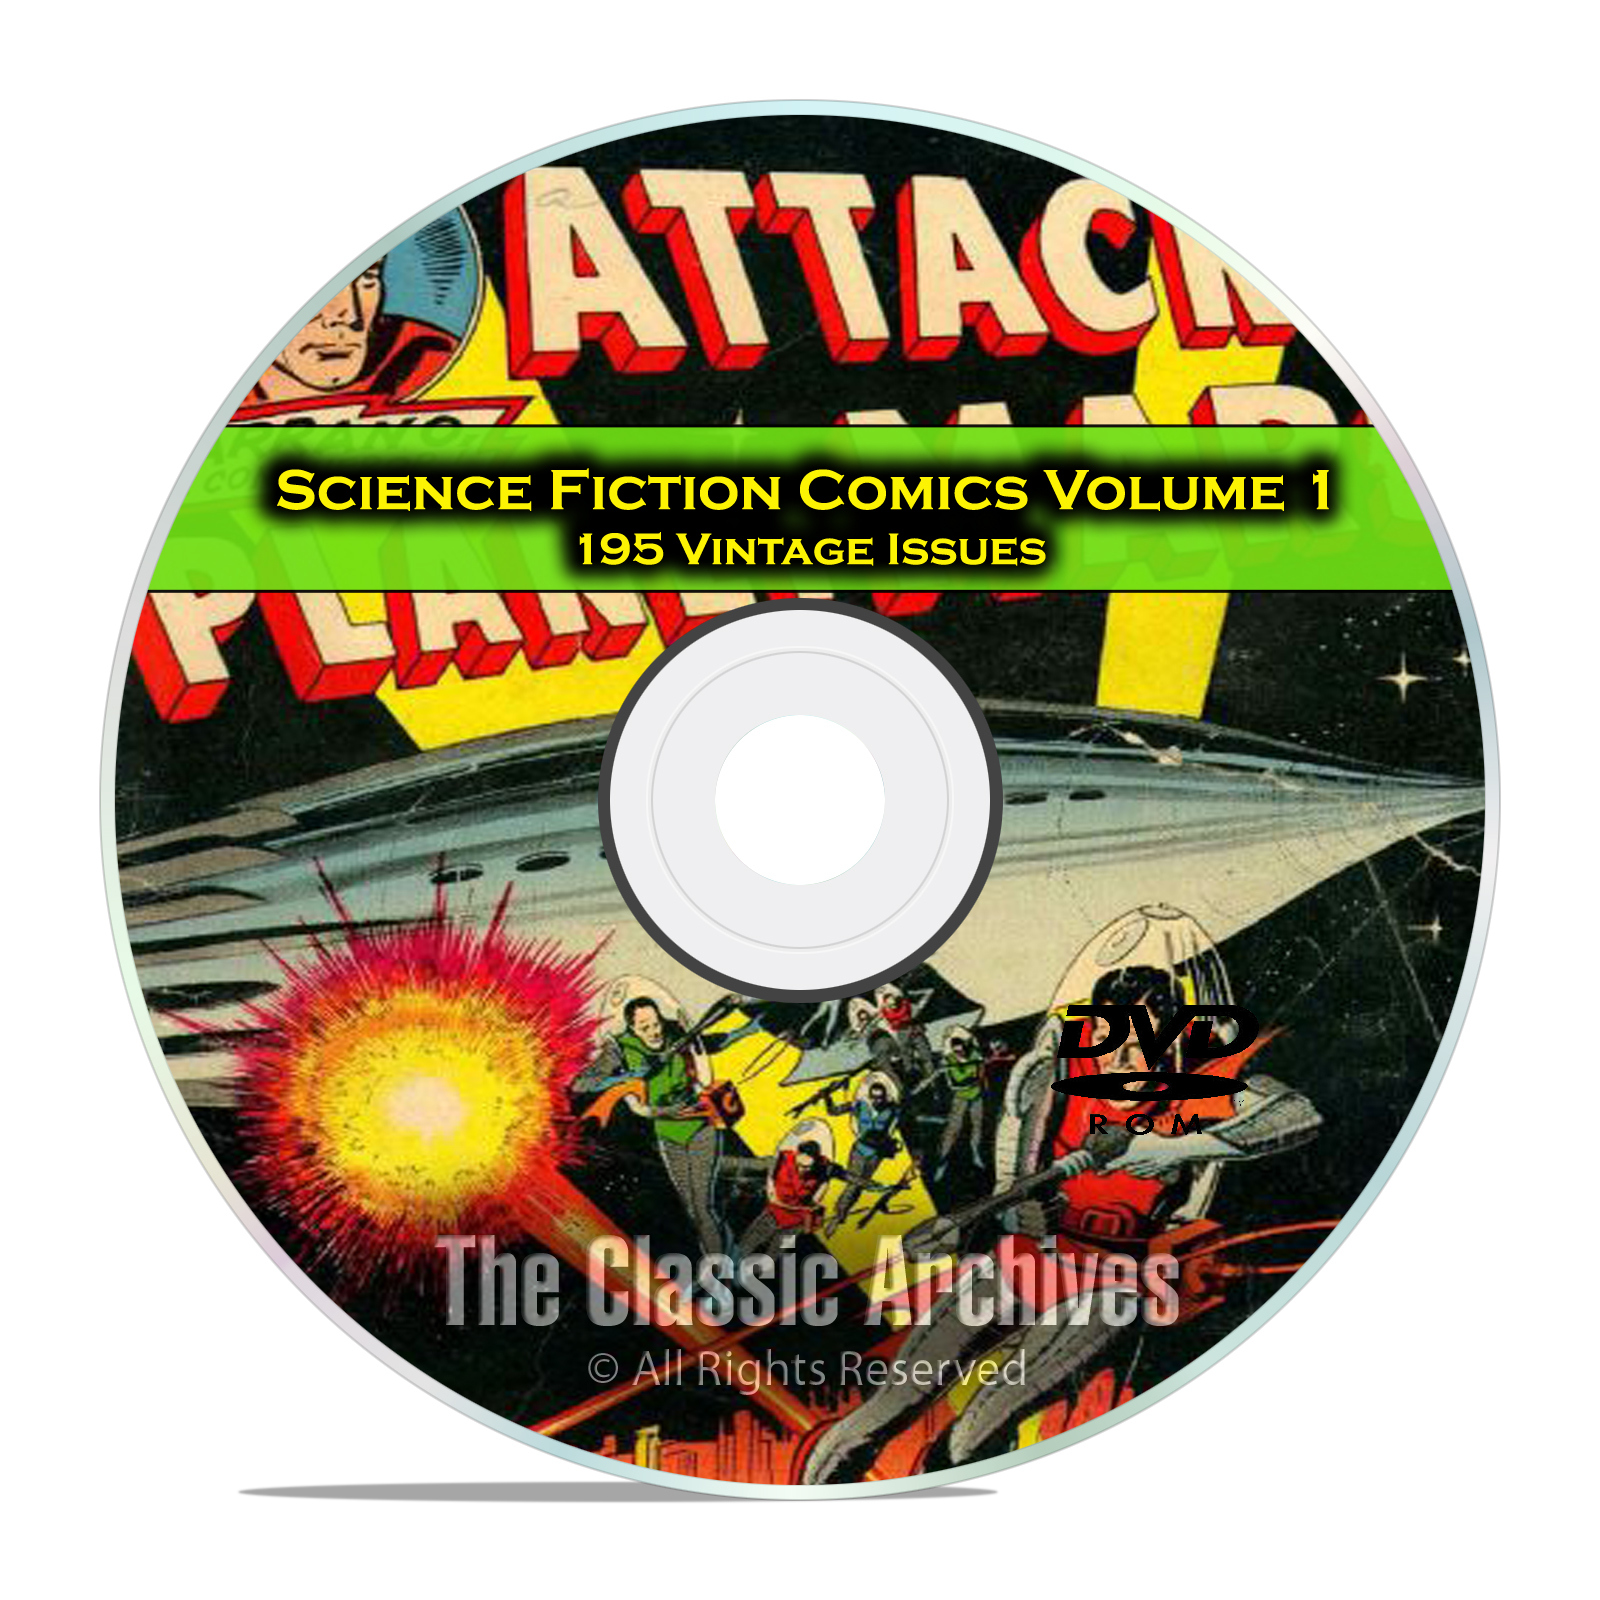 Science Fiction Comics, Vol 1, Space Adventures, Golden Age Comics PDF DVD